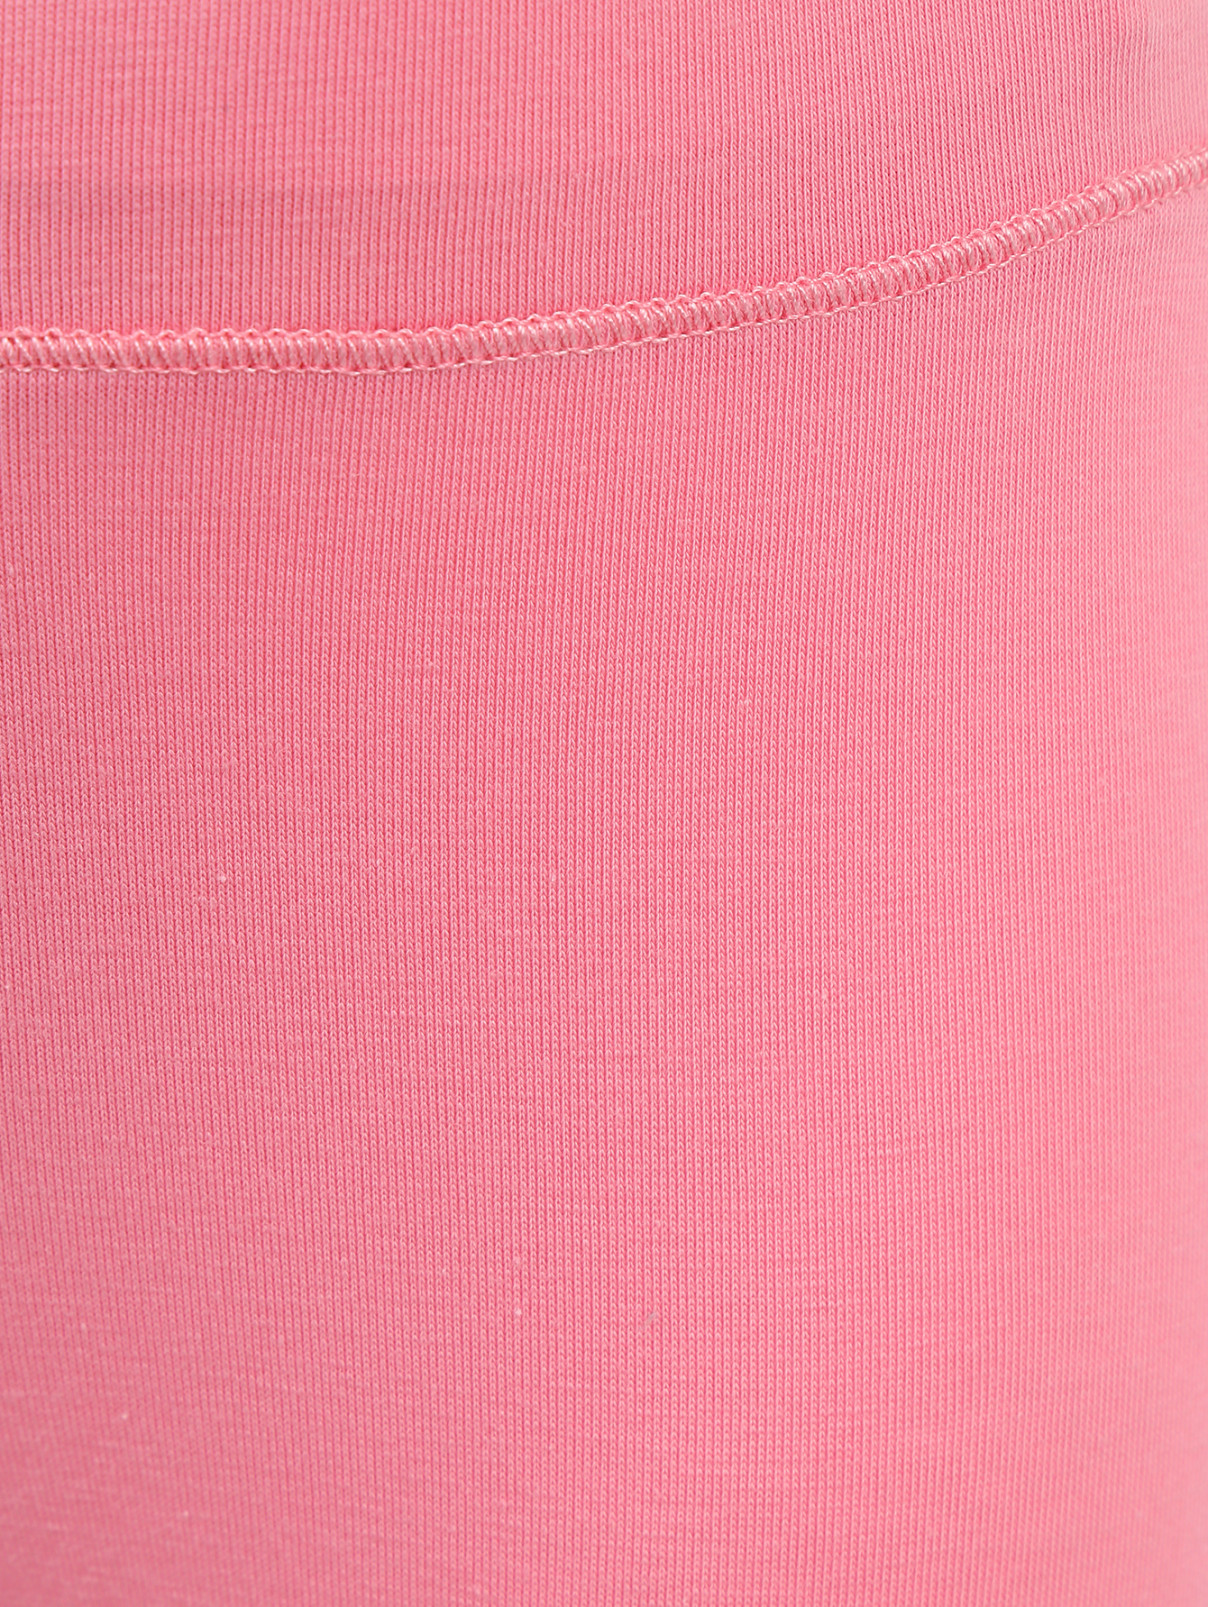 Леггинсы из хлопка украшенные кристаллами MiMiSol  –  Деталь  – Цвет:  Розовый